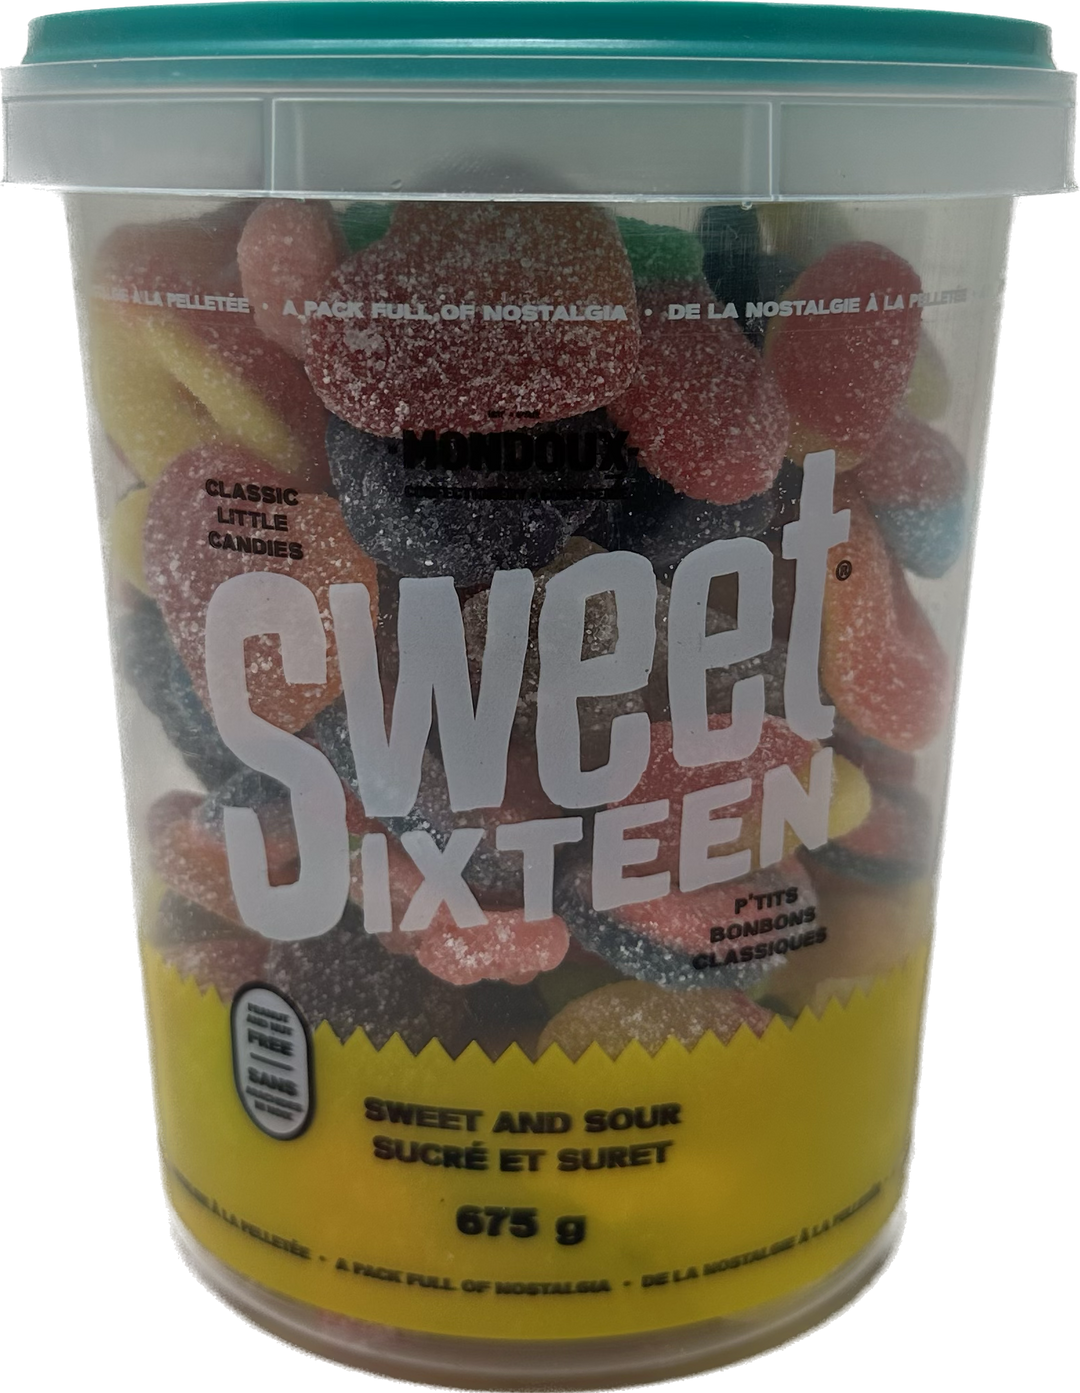 Sweet Sixteen - (675g) - Quecan